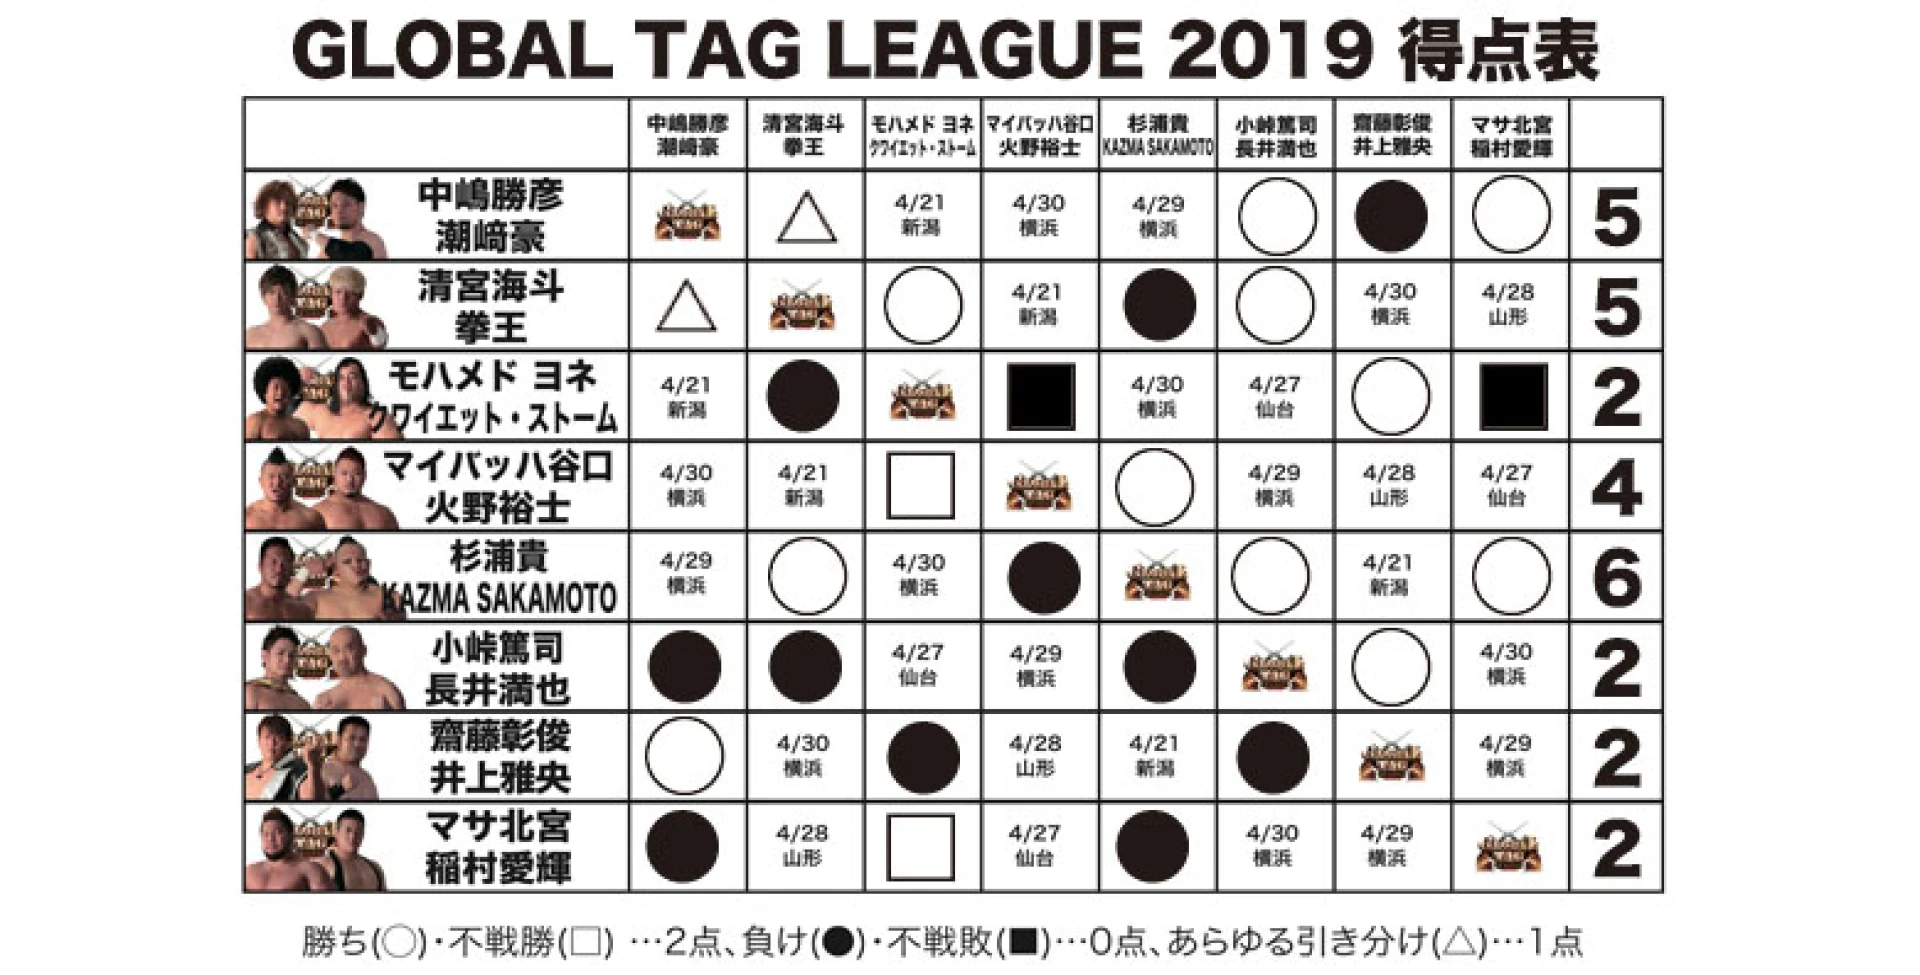 【4.17後楽園大会終了時の得点状況】『GLOBAL TAG LEAGUE 2019』得点表